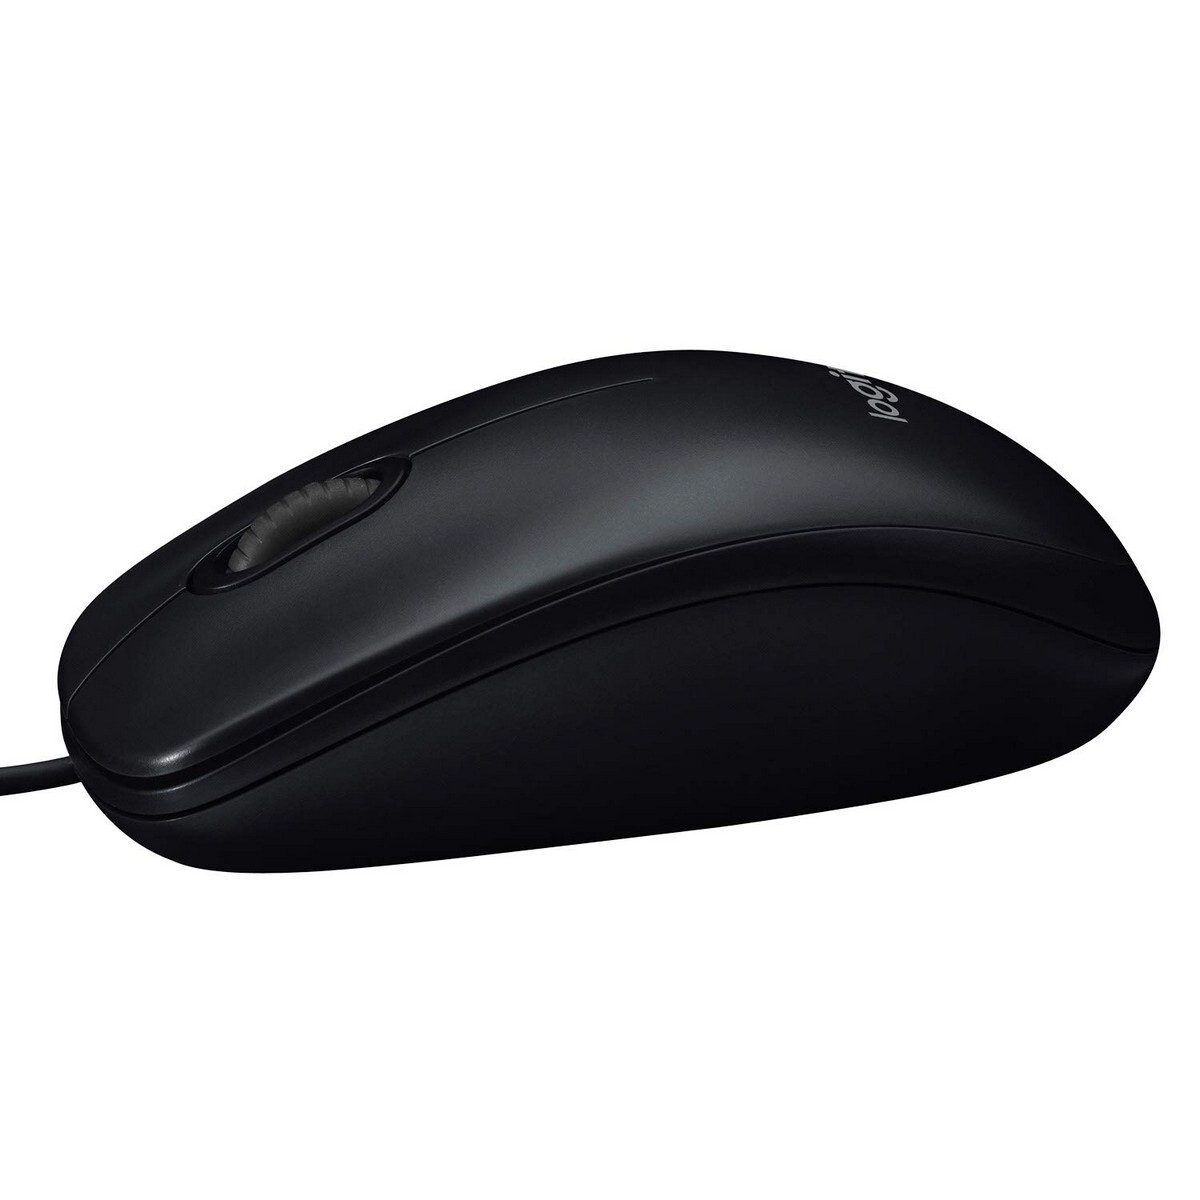 Logitech USB Mouse M90 Black